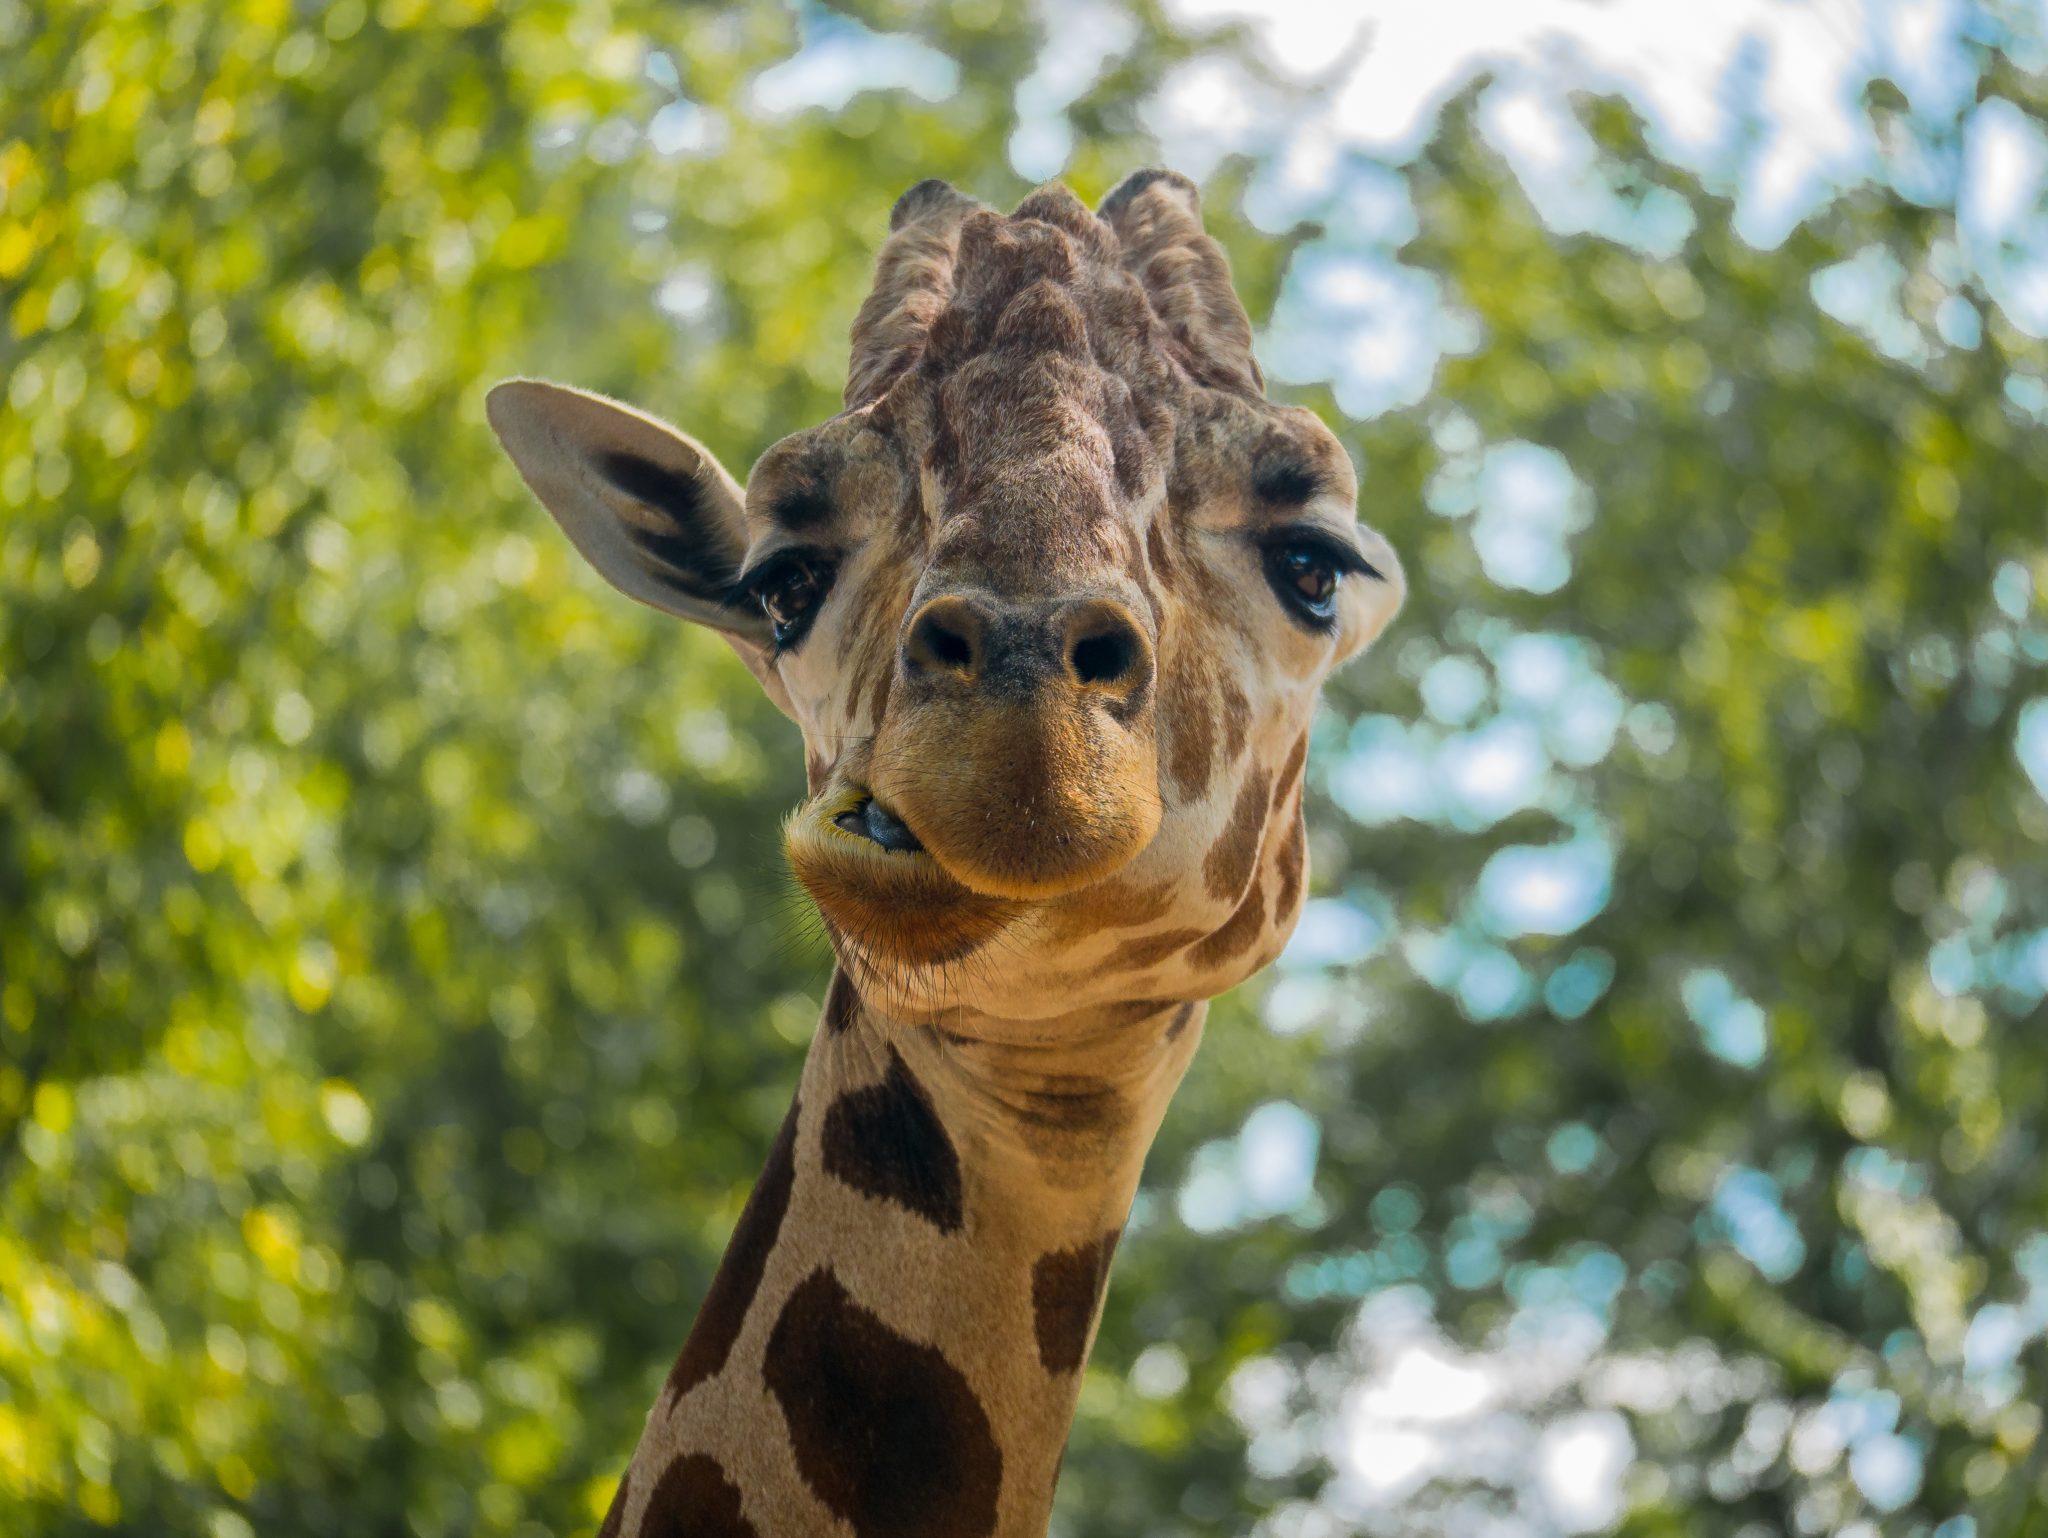 Giraffe making a silly face